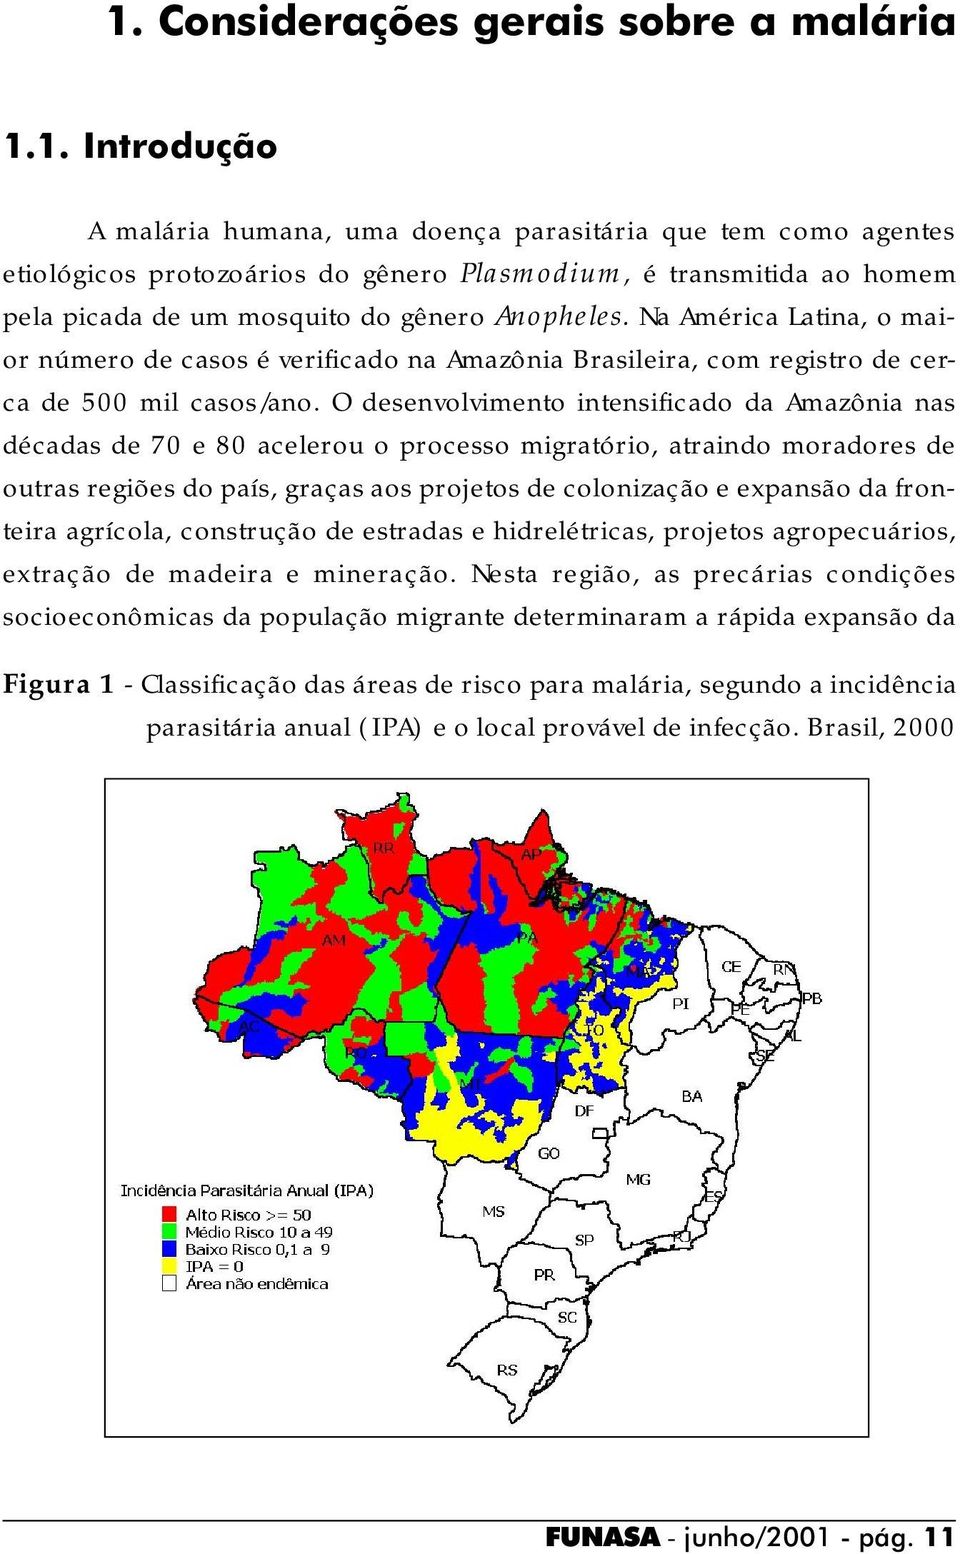 O desenvolvimento intensificado da Amazônia nas décadas de 70 e 80 acelerou o processo migratório, atraindo moradores de outras regiões do país, graças aos projetos de colonização e expansão da